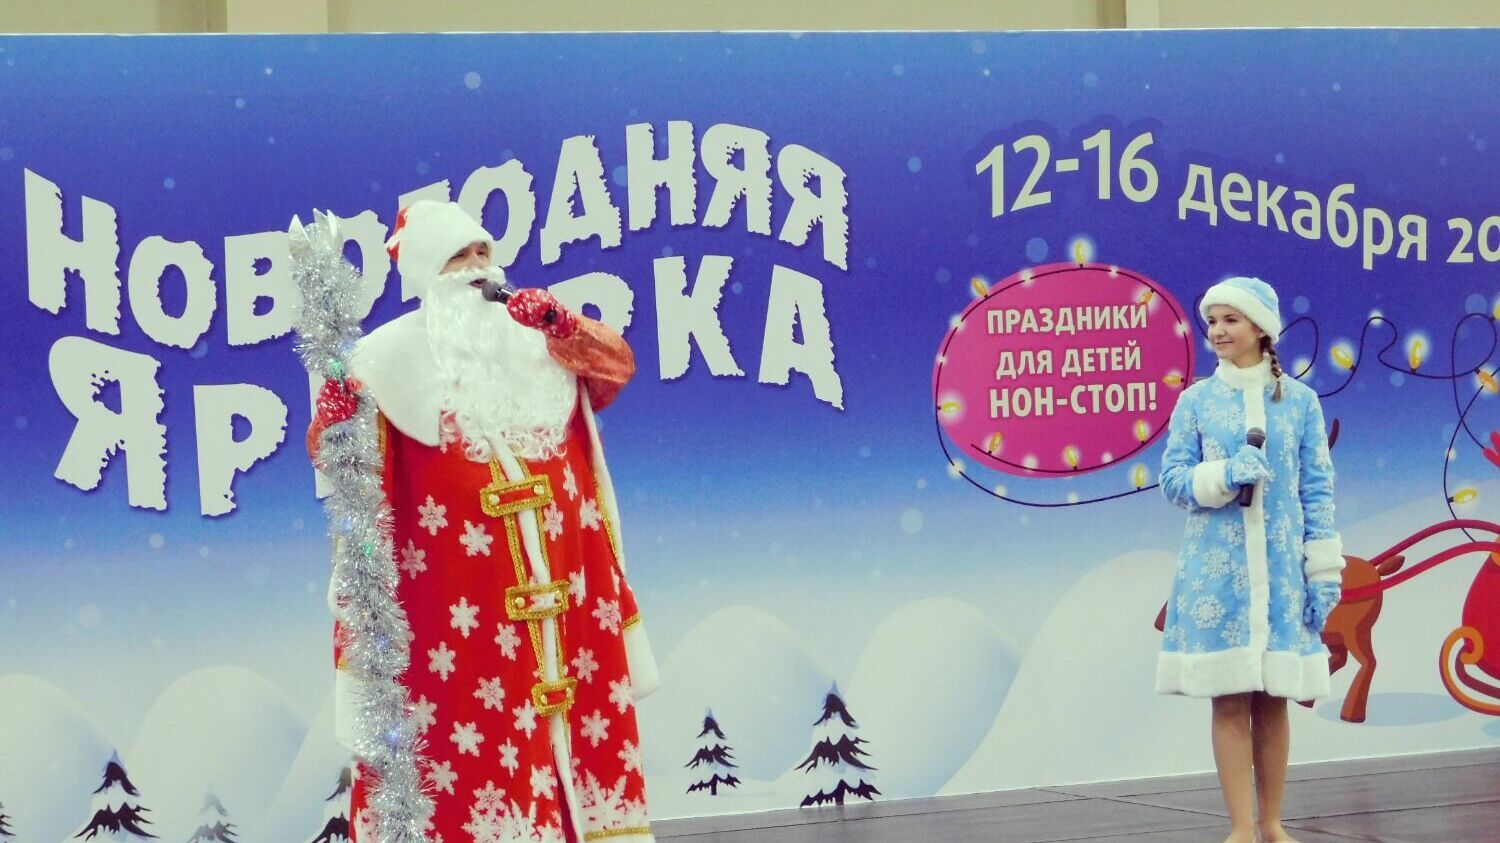 Что известно о проведении новогоднего торжества в России?